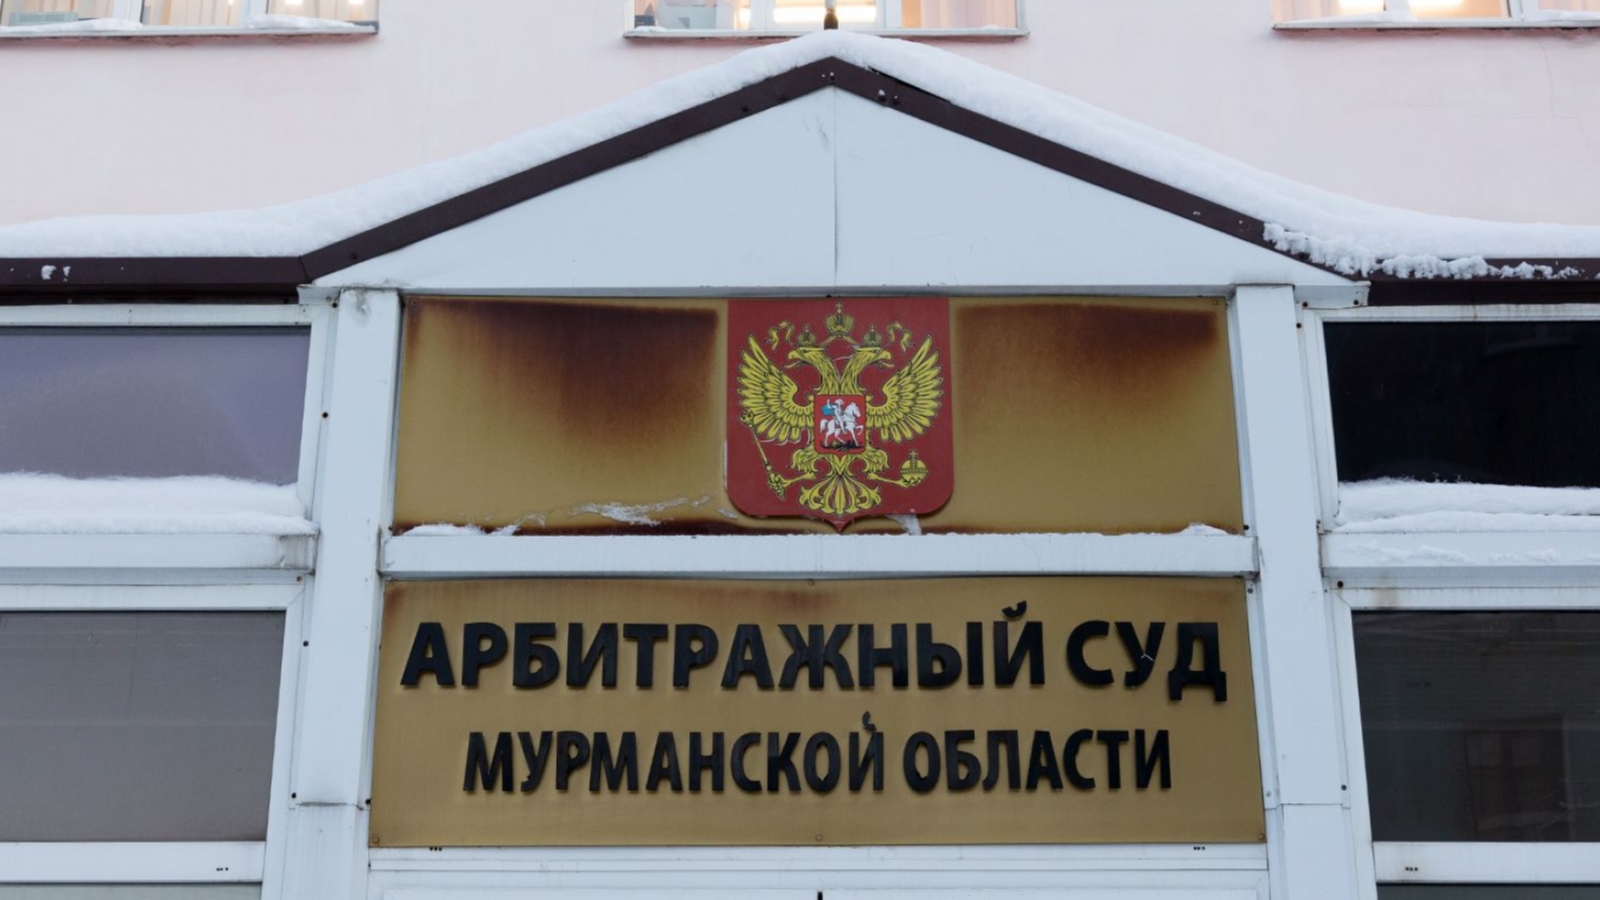 Суд не пошёл на поводу у «управляшки» с улицы Орликовой